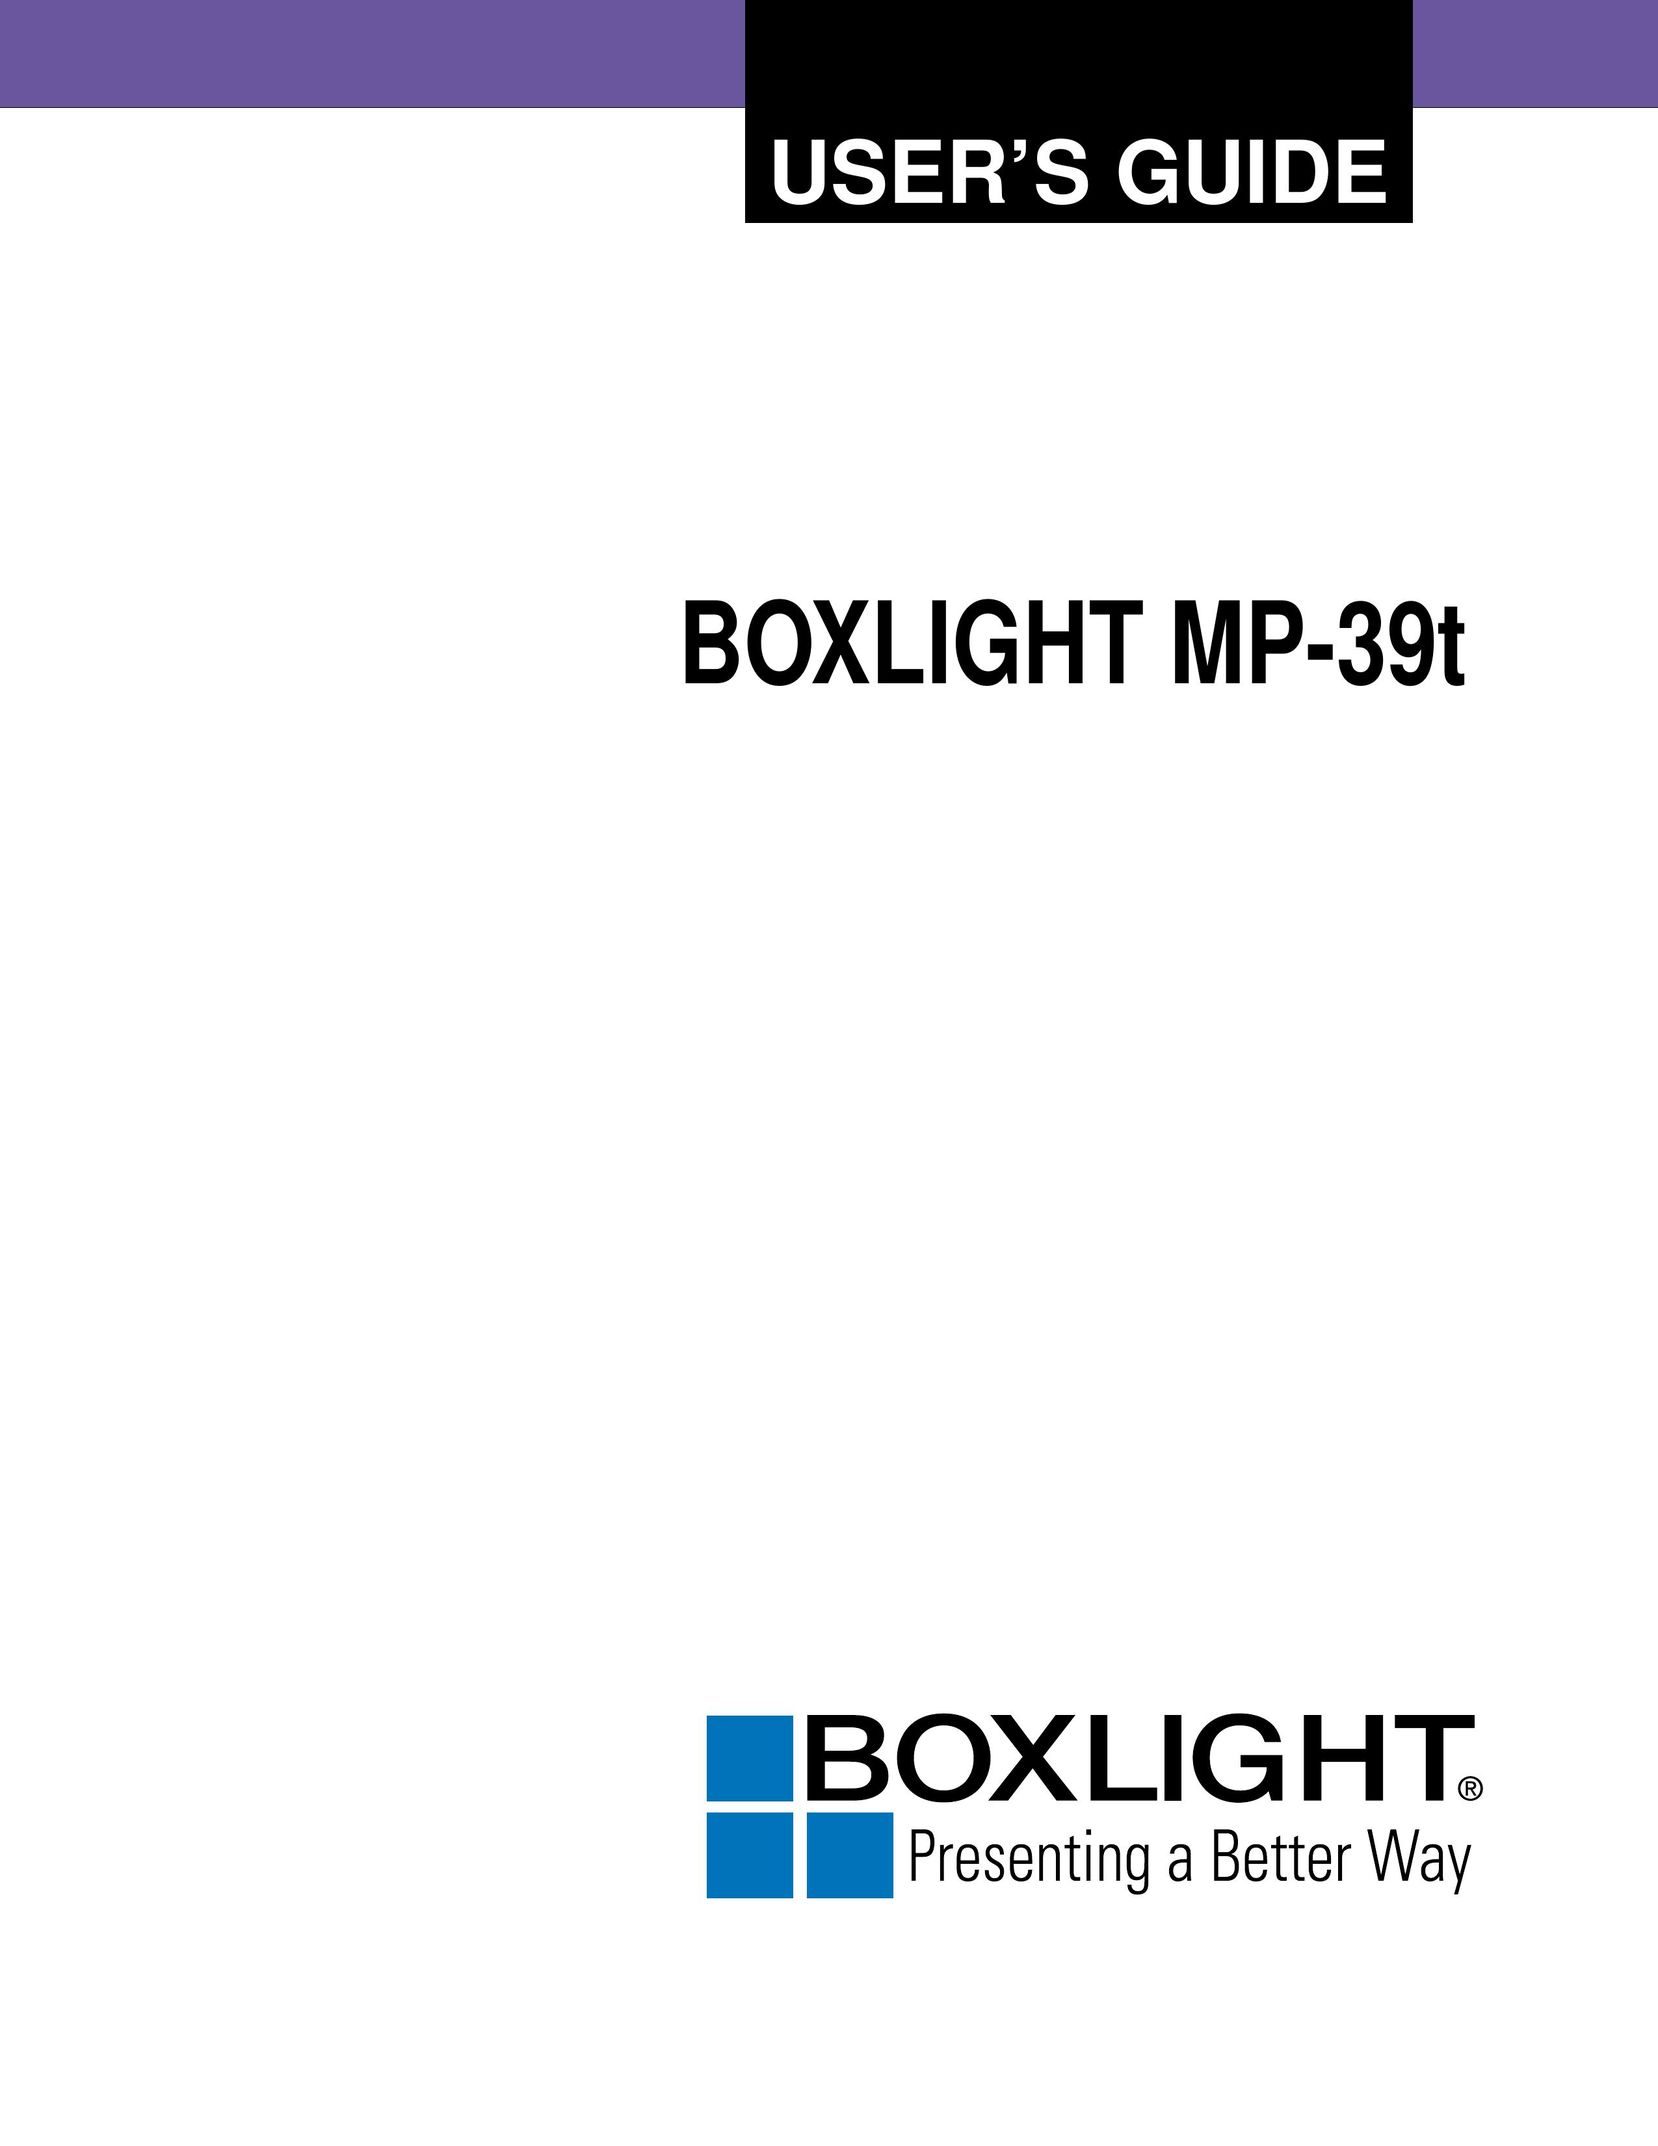 BOXLIGHT MP-39t Projector User Manual